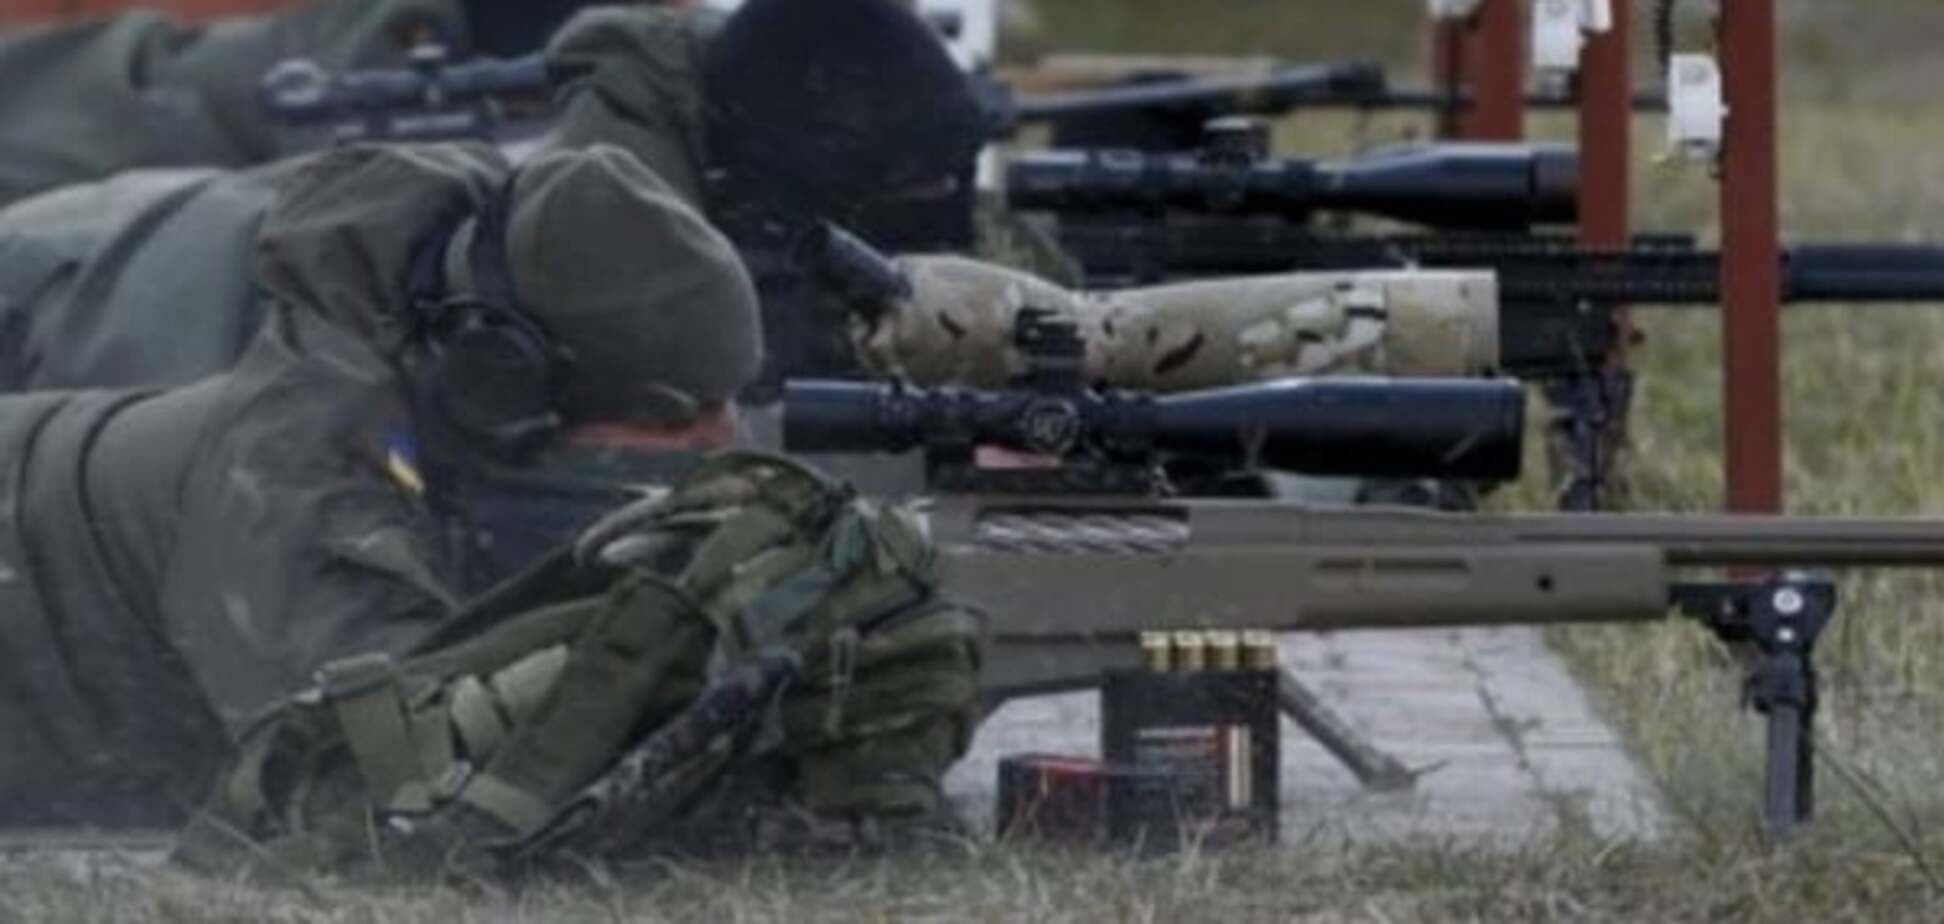 За стандартами НАТО: стало відомо, як готують снайперів Нацгвардії України. Опубліковані фото і відео